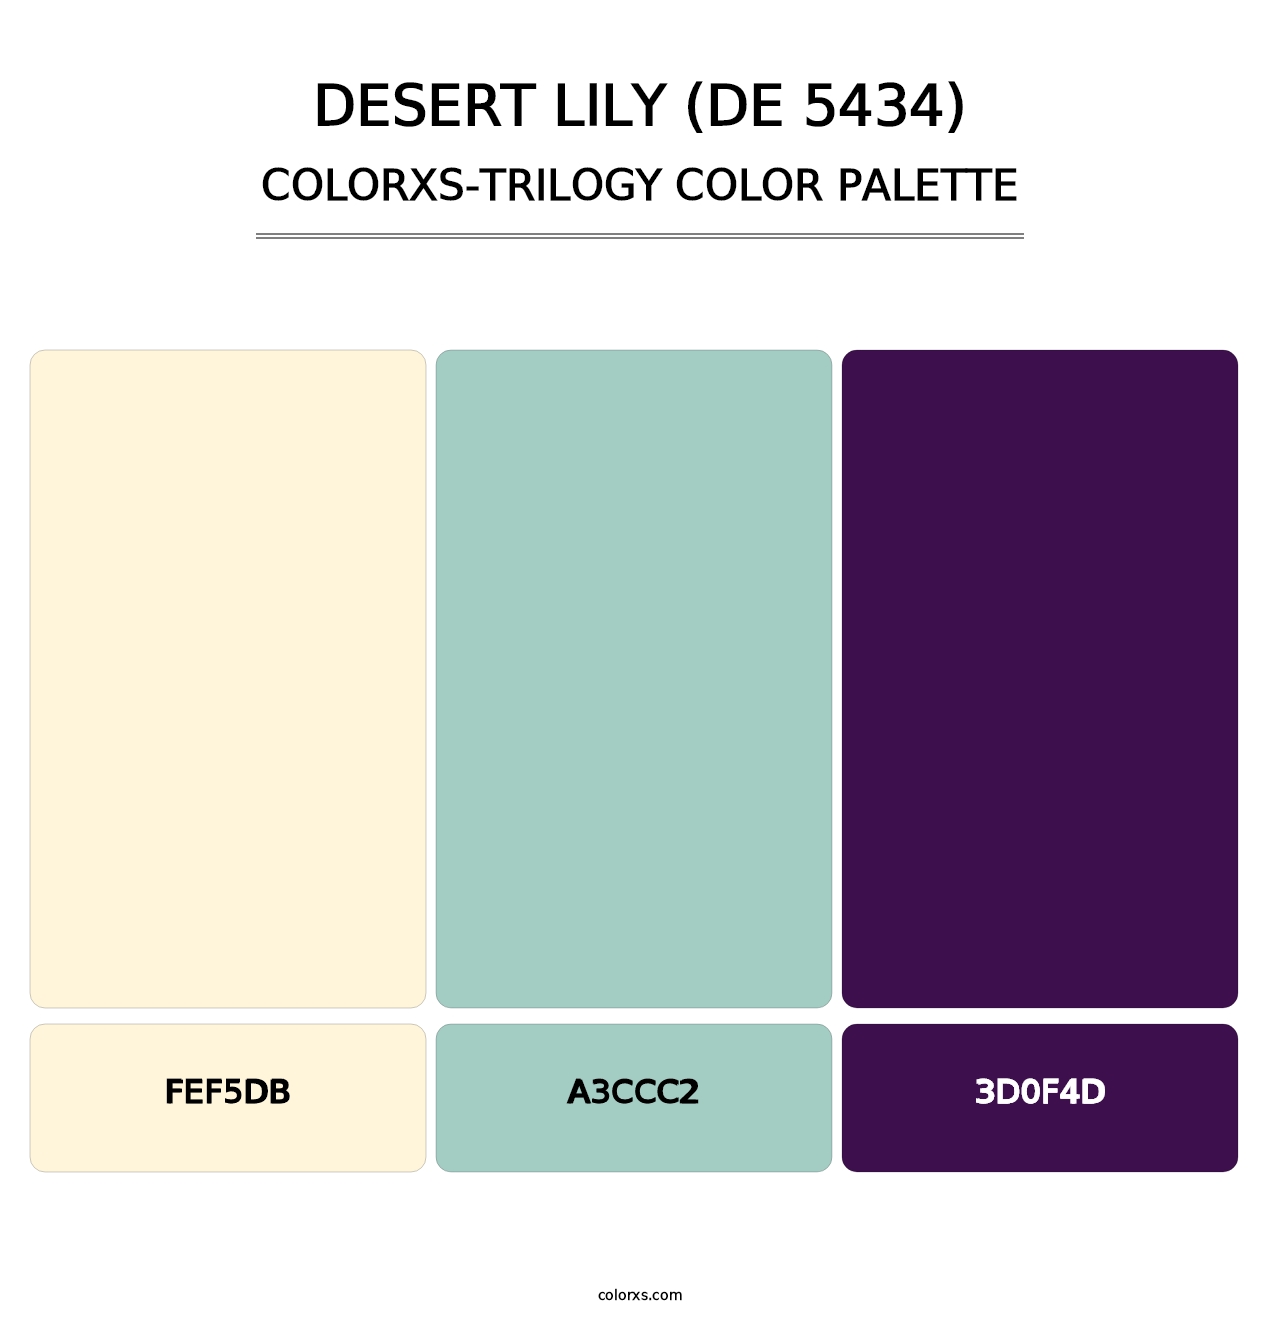 Desert Lily (DE 5434) - Colorxs Trilogy Palette